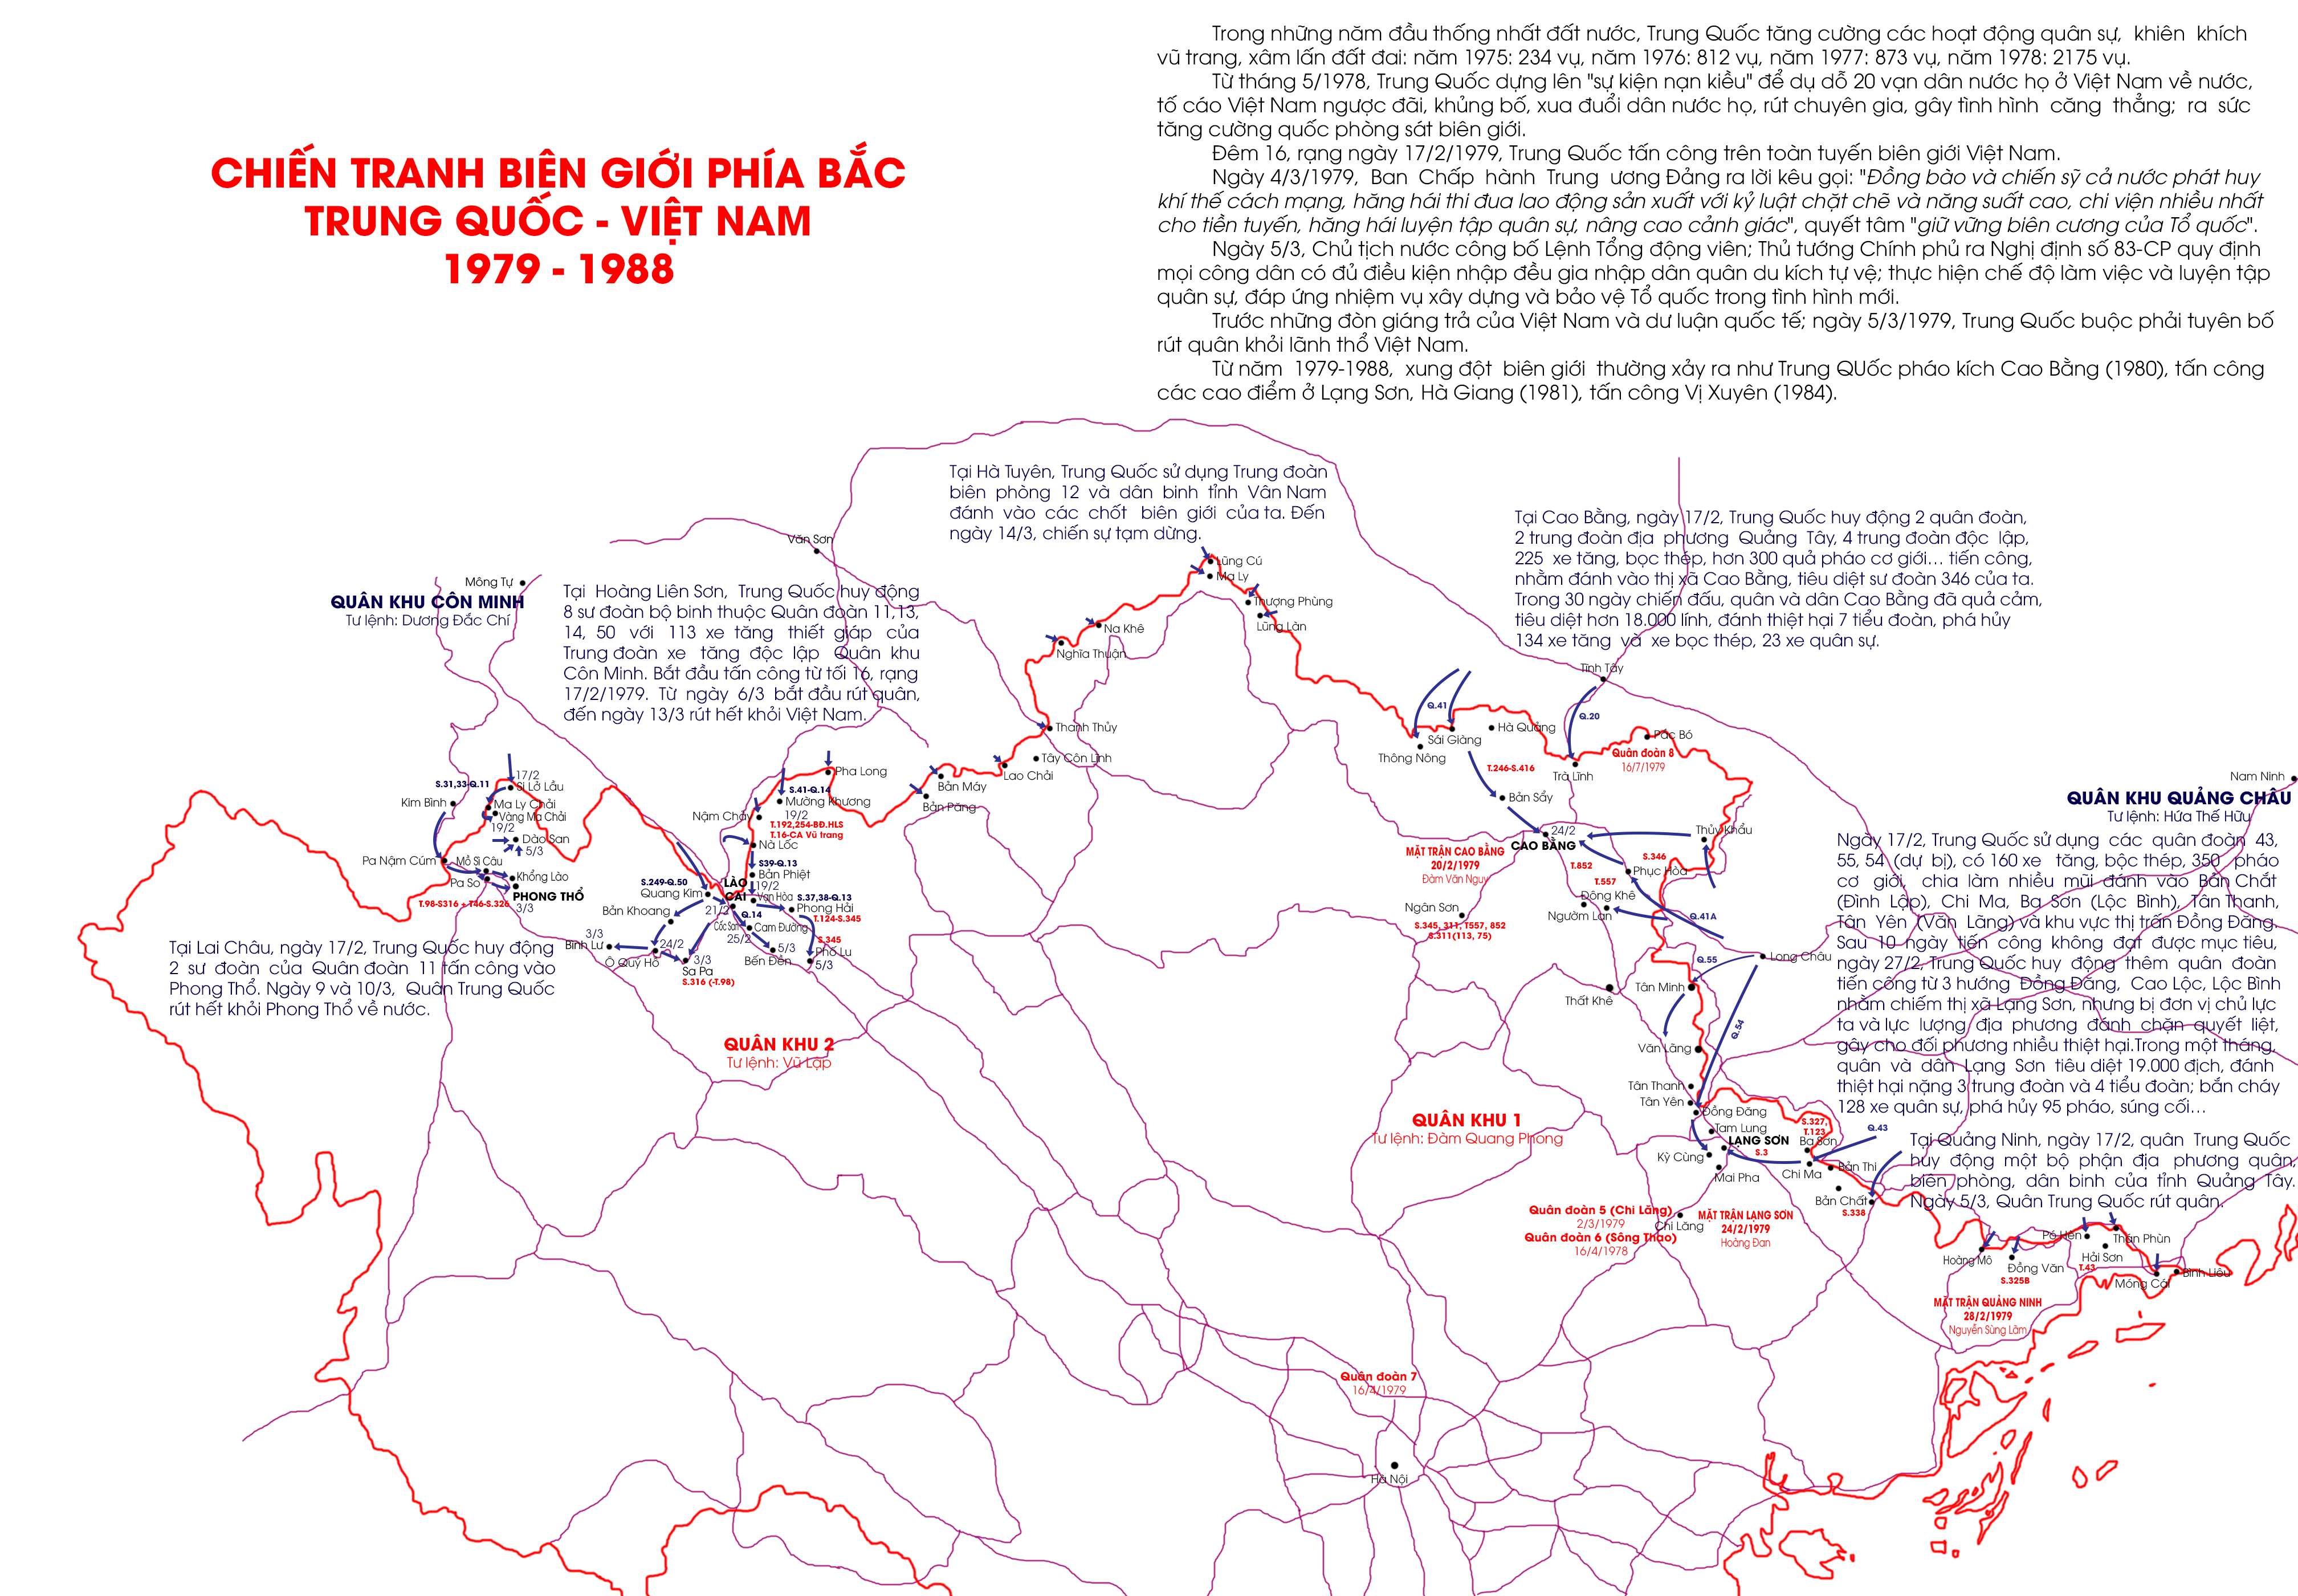 Chiến tranh biên giới phía Bắc 1979